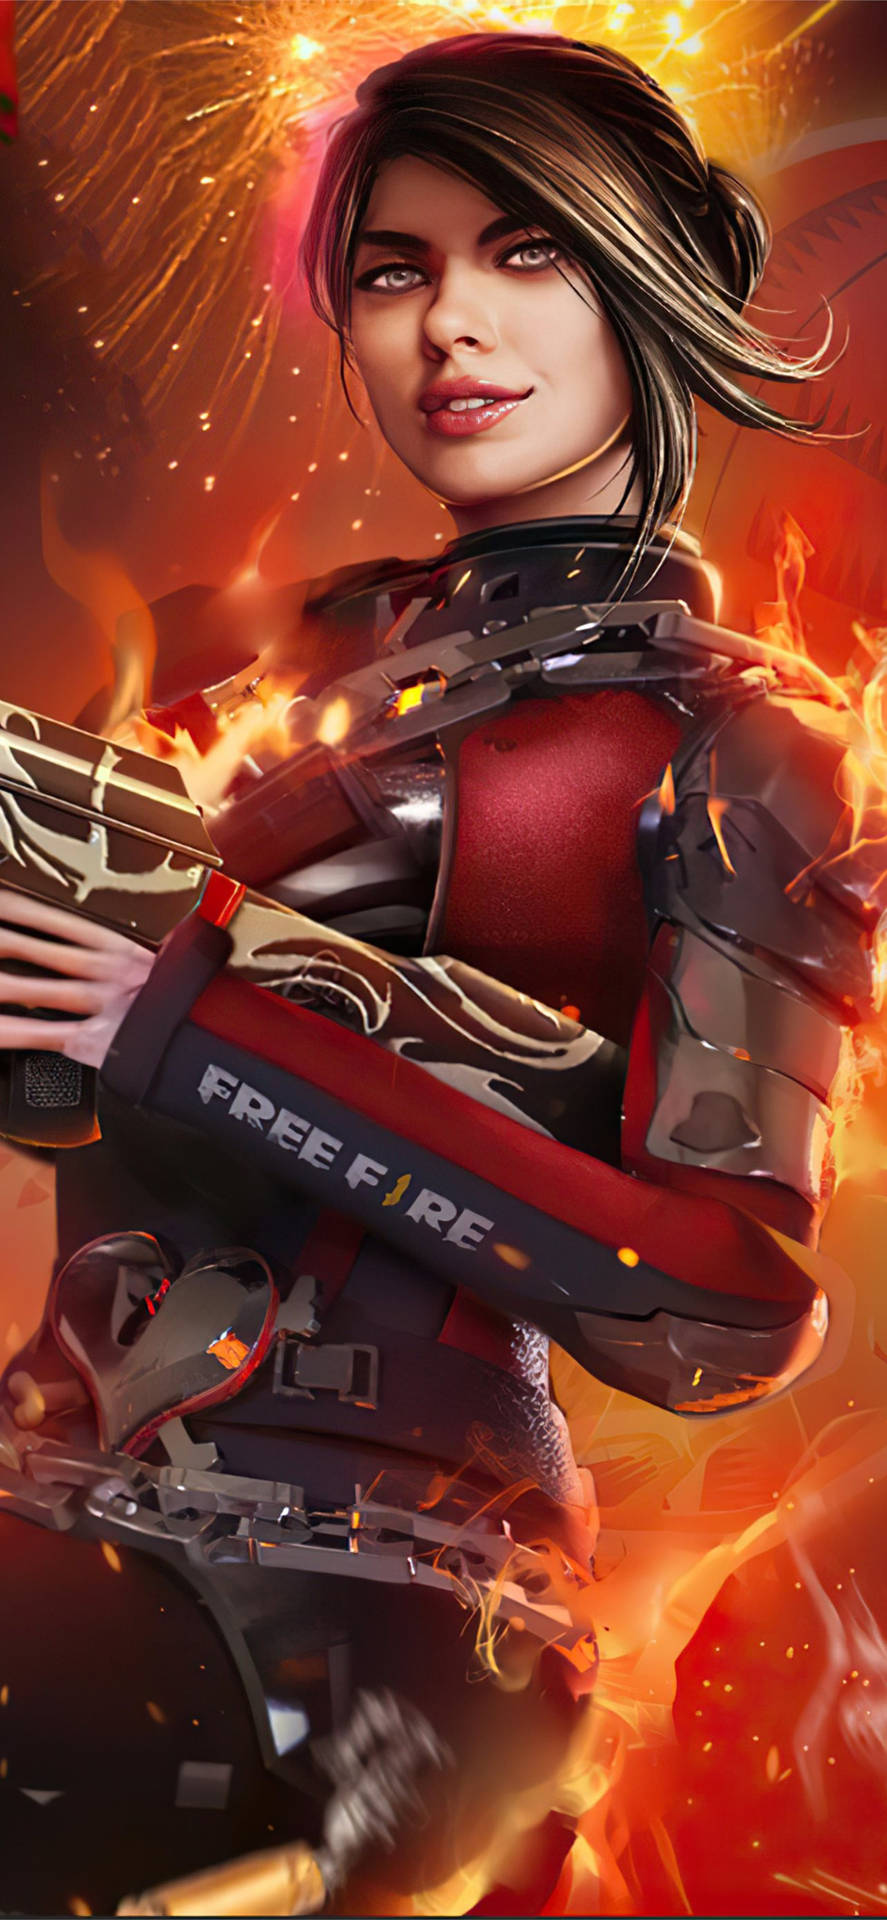 Free Fire Season 1: Fierce Battle In Red Body-suit Background